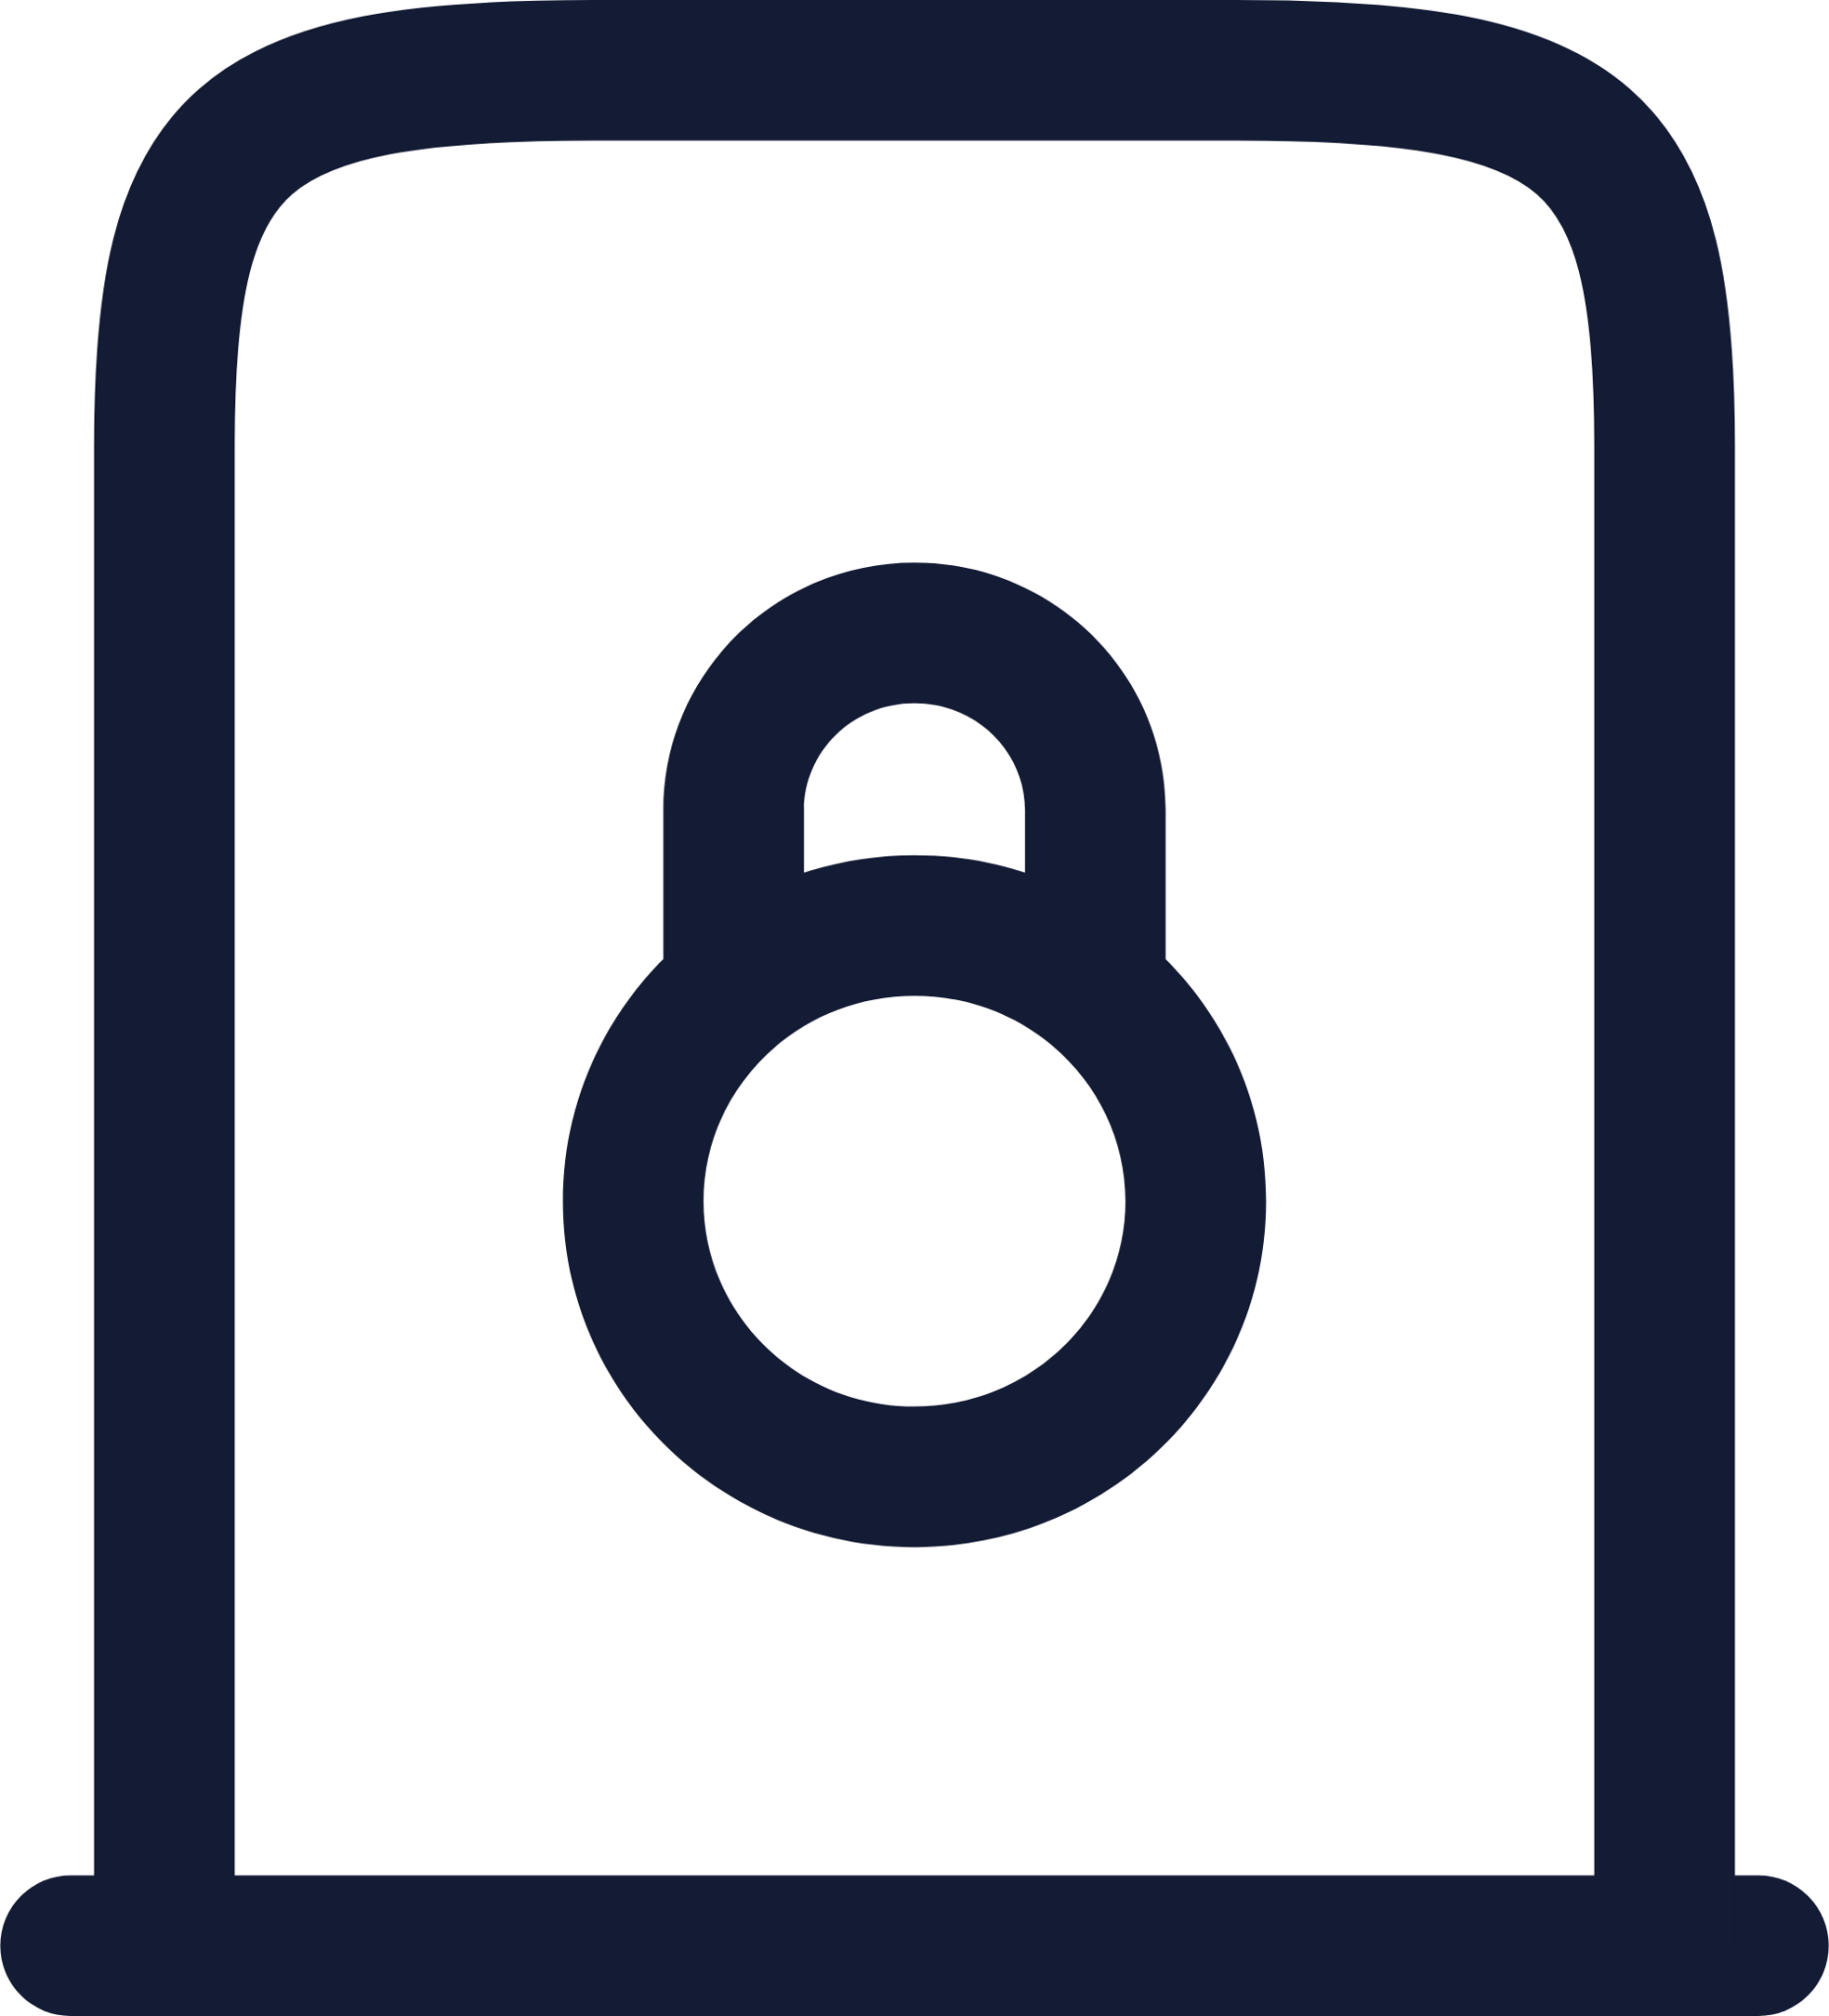 door lock icon